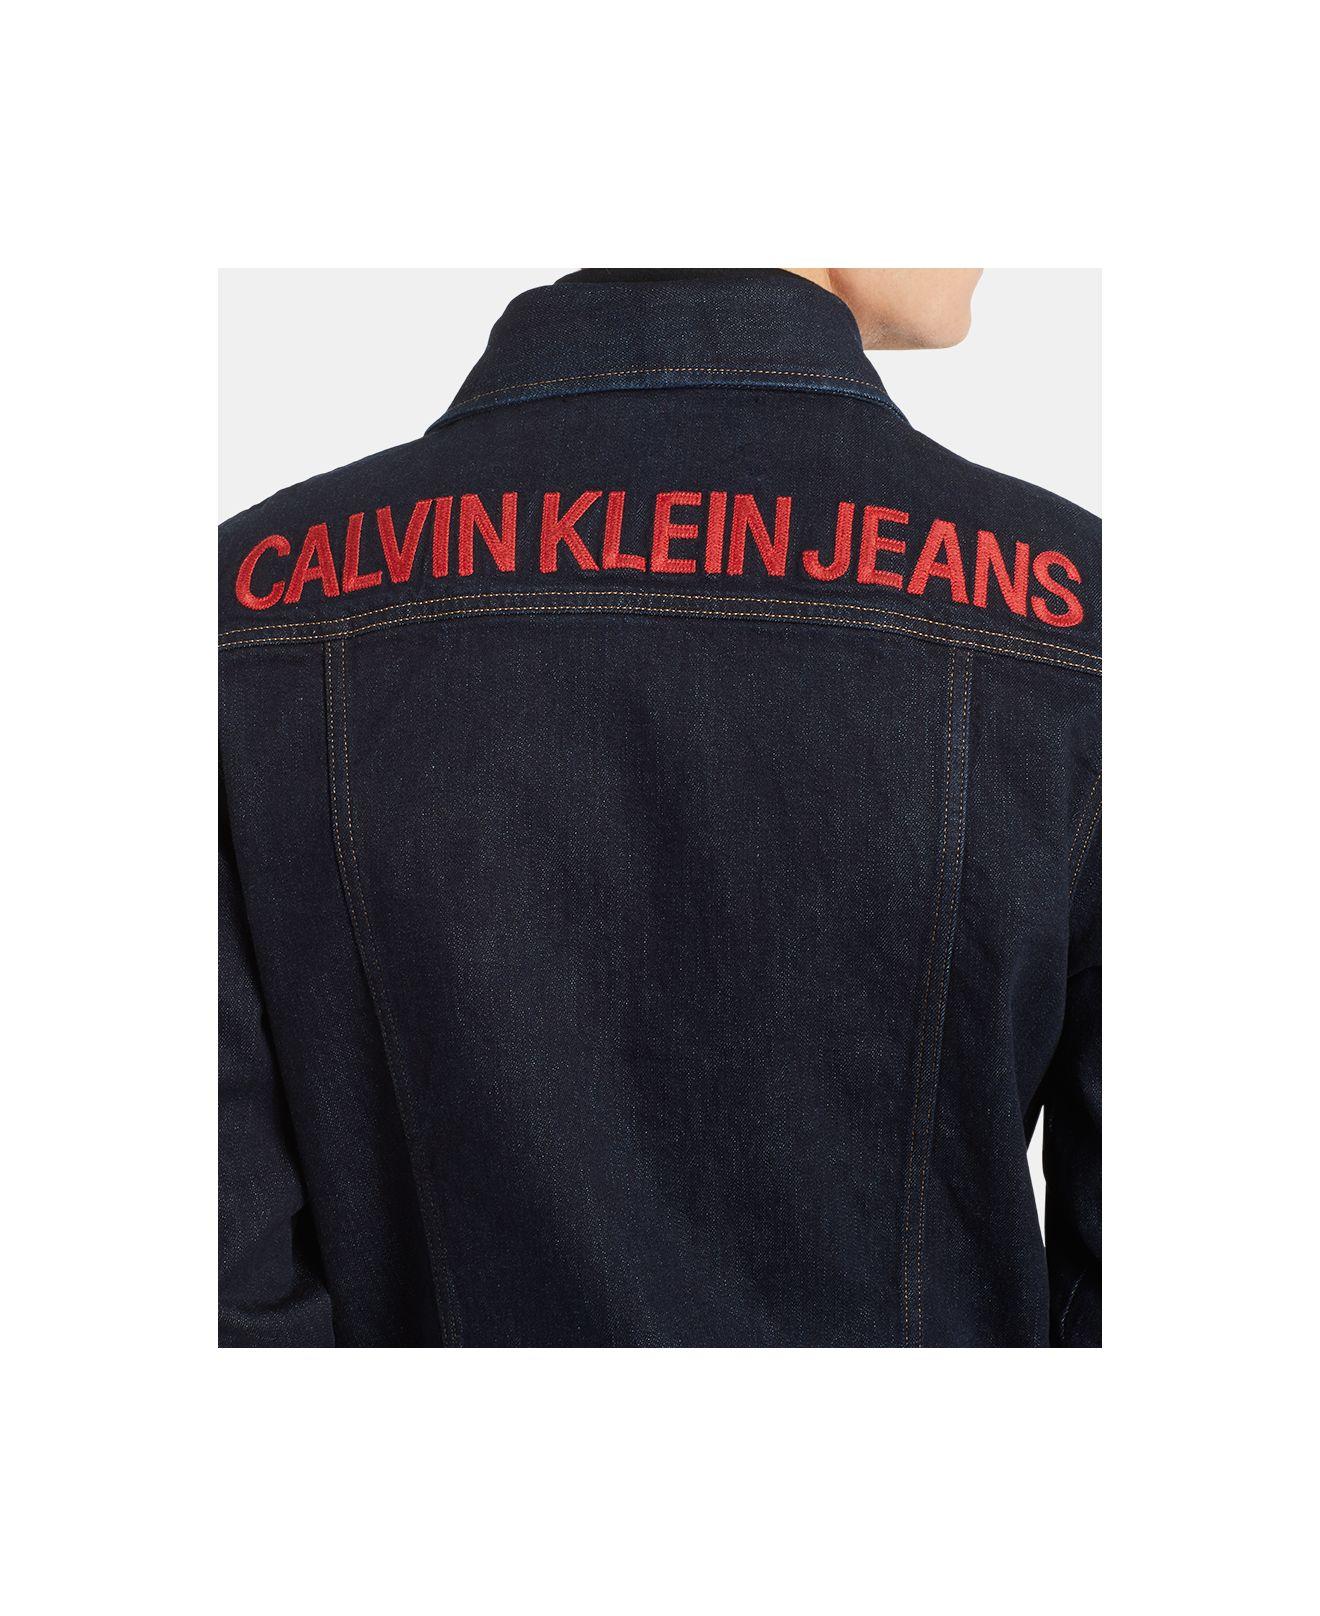 calvin klein jeans foundation trucker